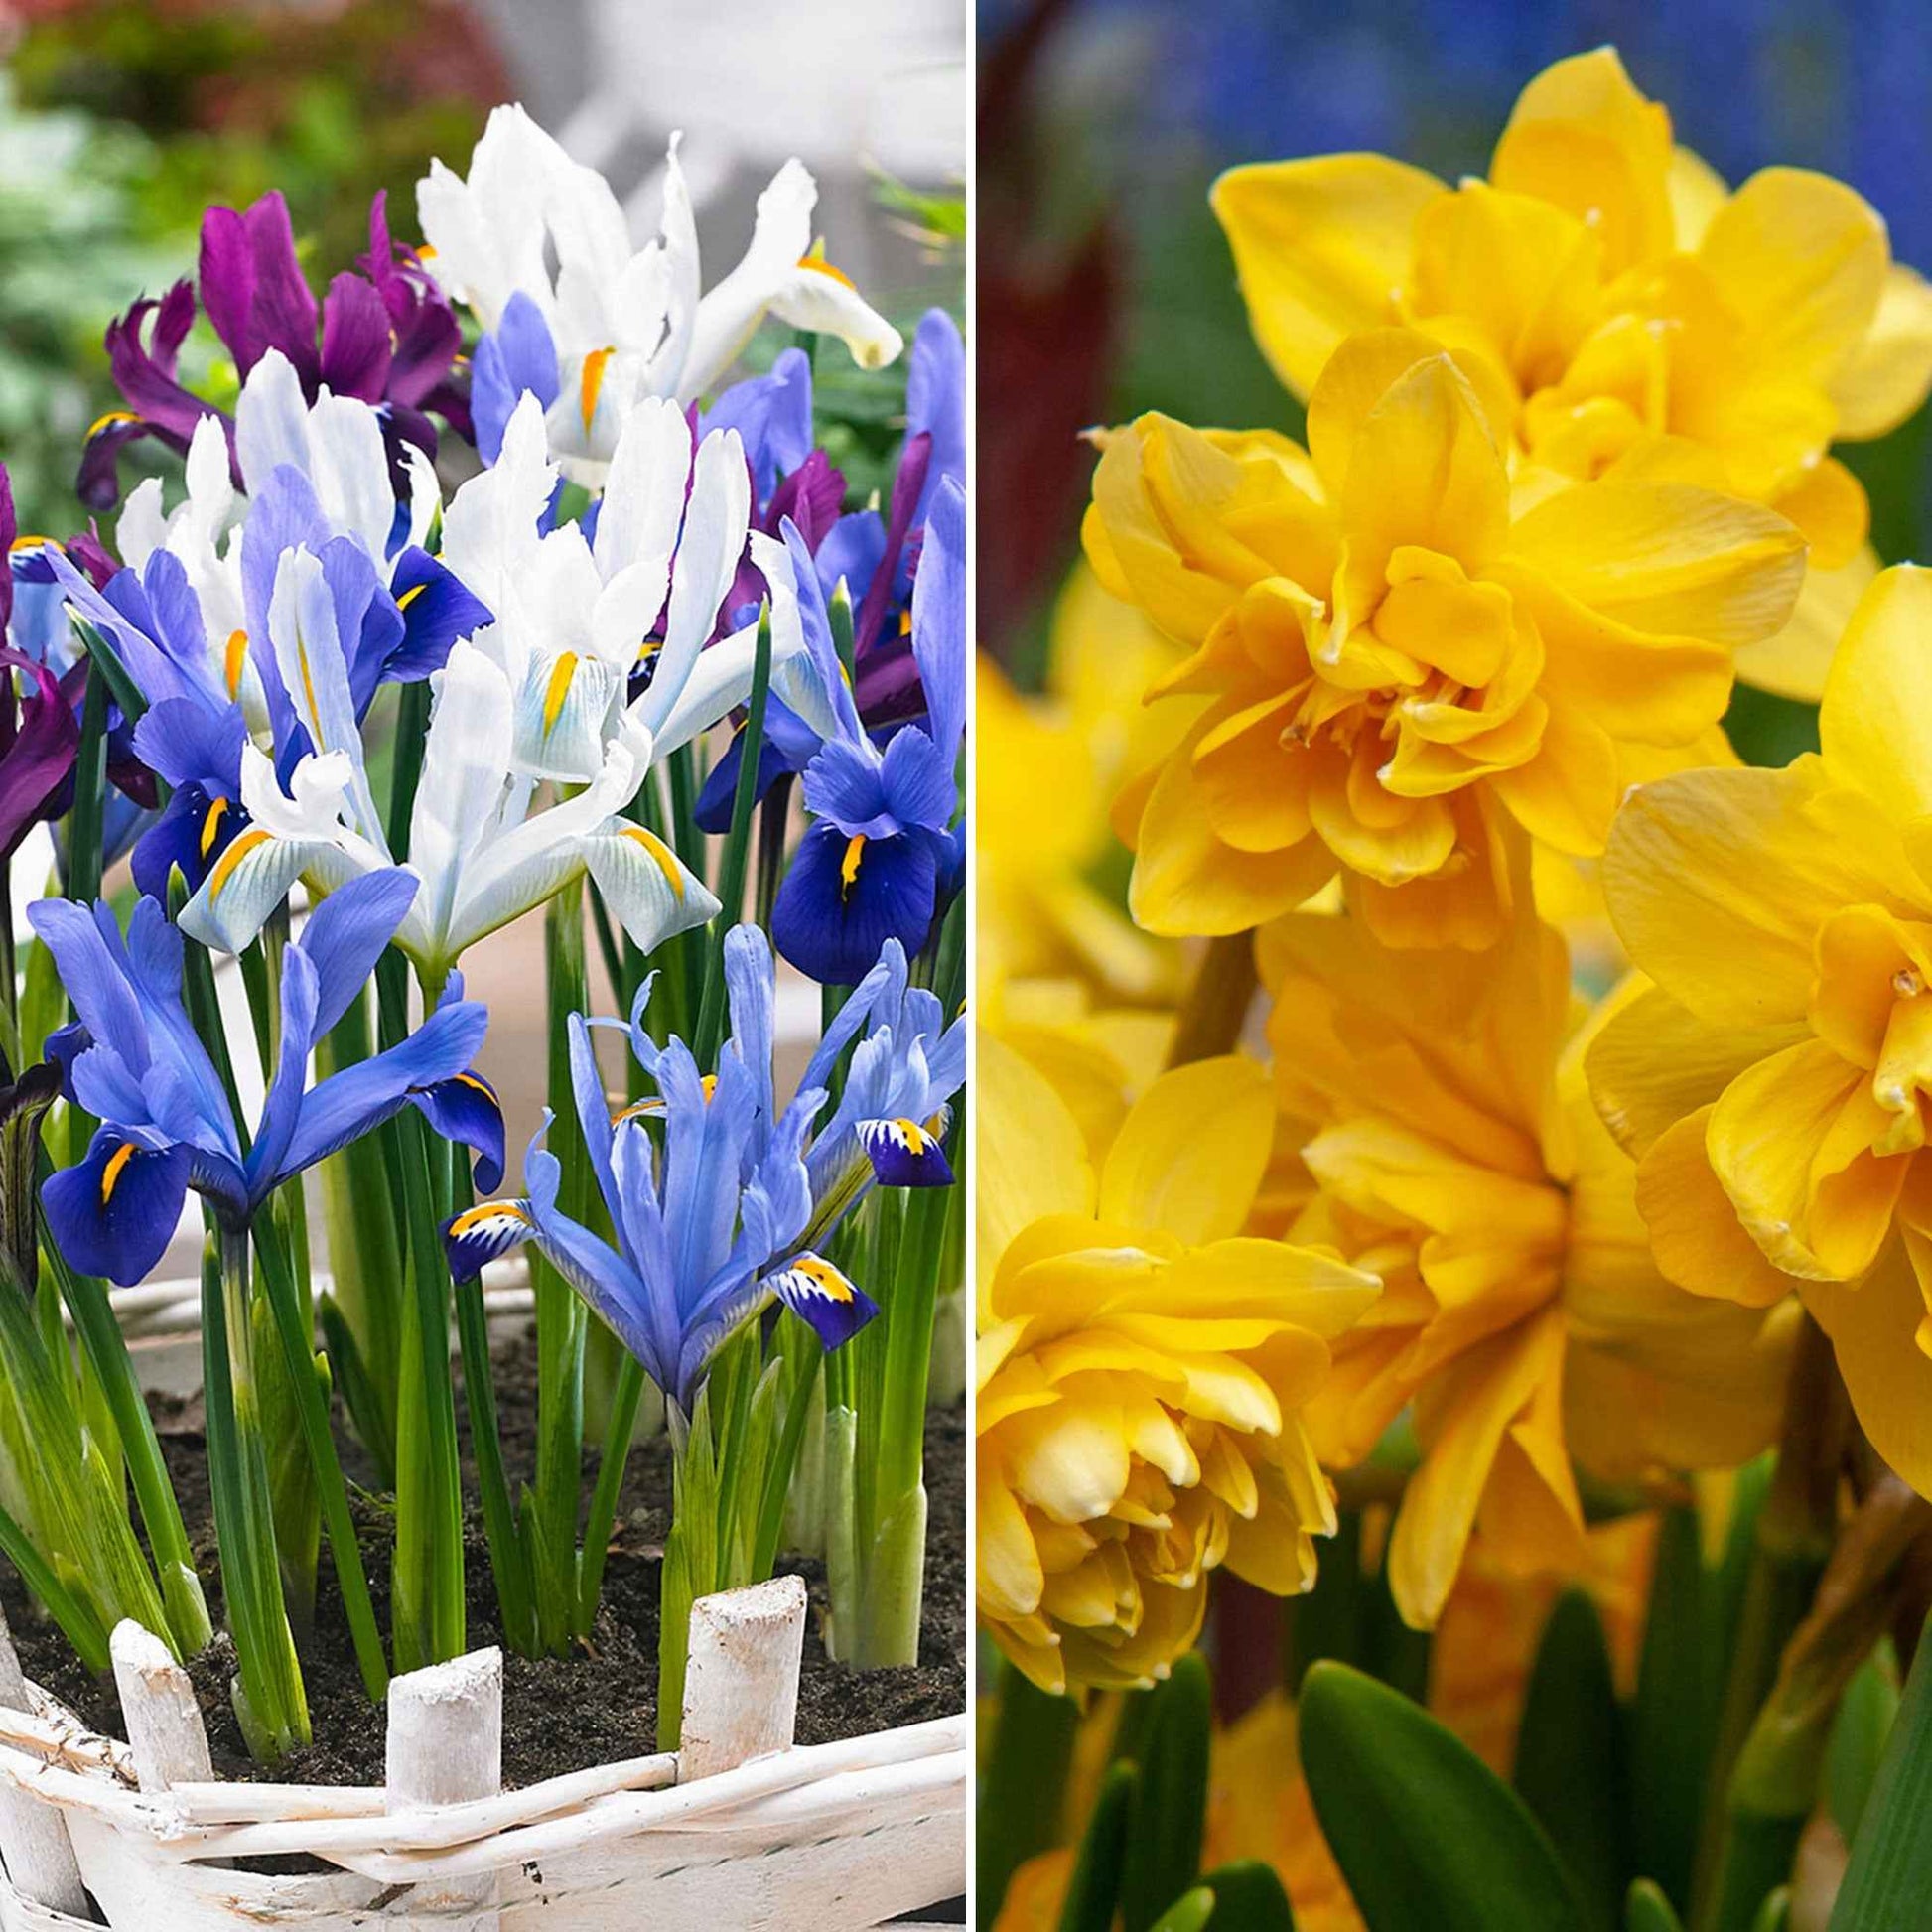 50x Bloembollenpakket Tuin vol Narcissen en Irissen geel-paars - Alle bloembollen